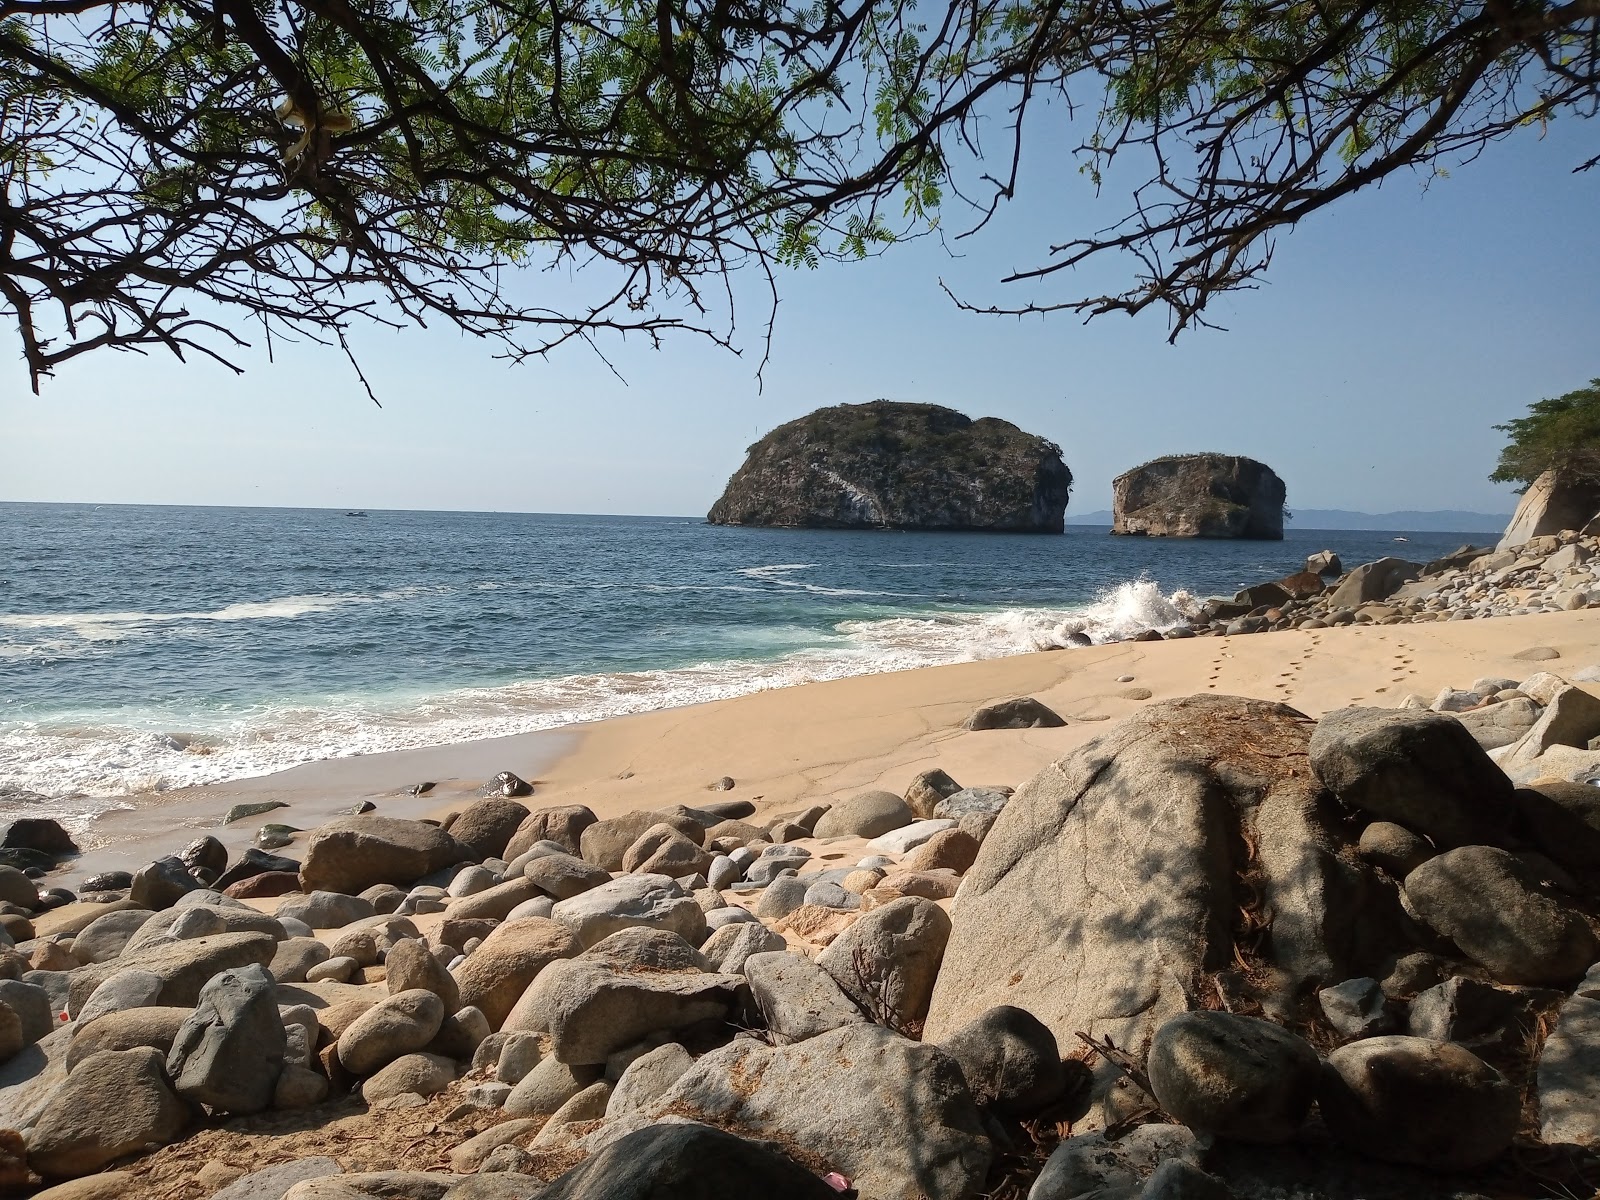 Arcos beach'in fotoğrafı parlak kum ve kayalar yüzey ile